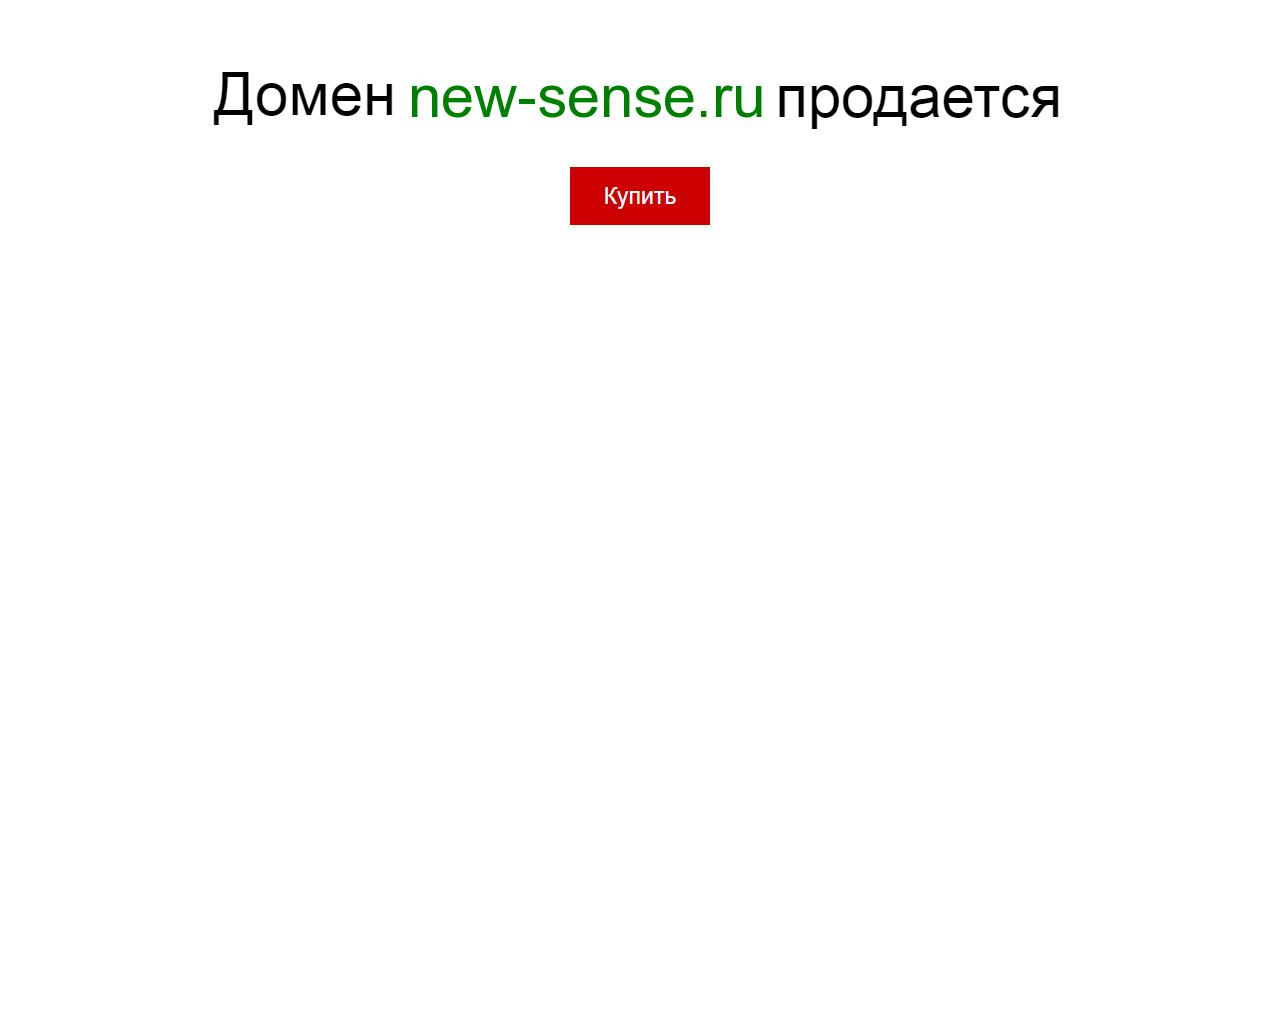 Изображение сайта new-sense.ru в разрешении 1280x1024